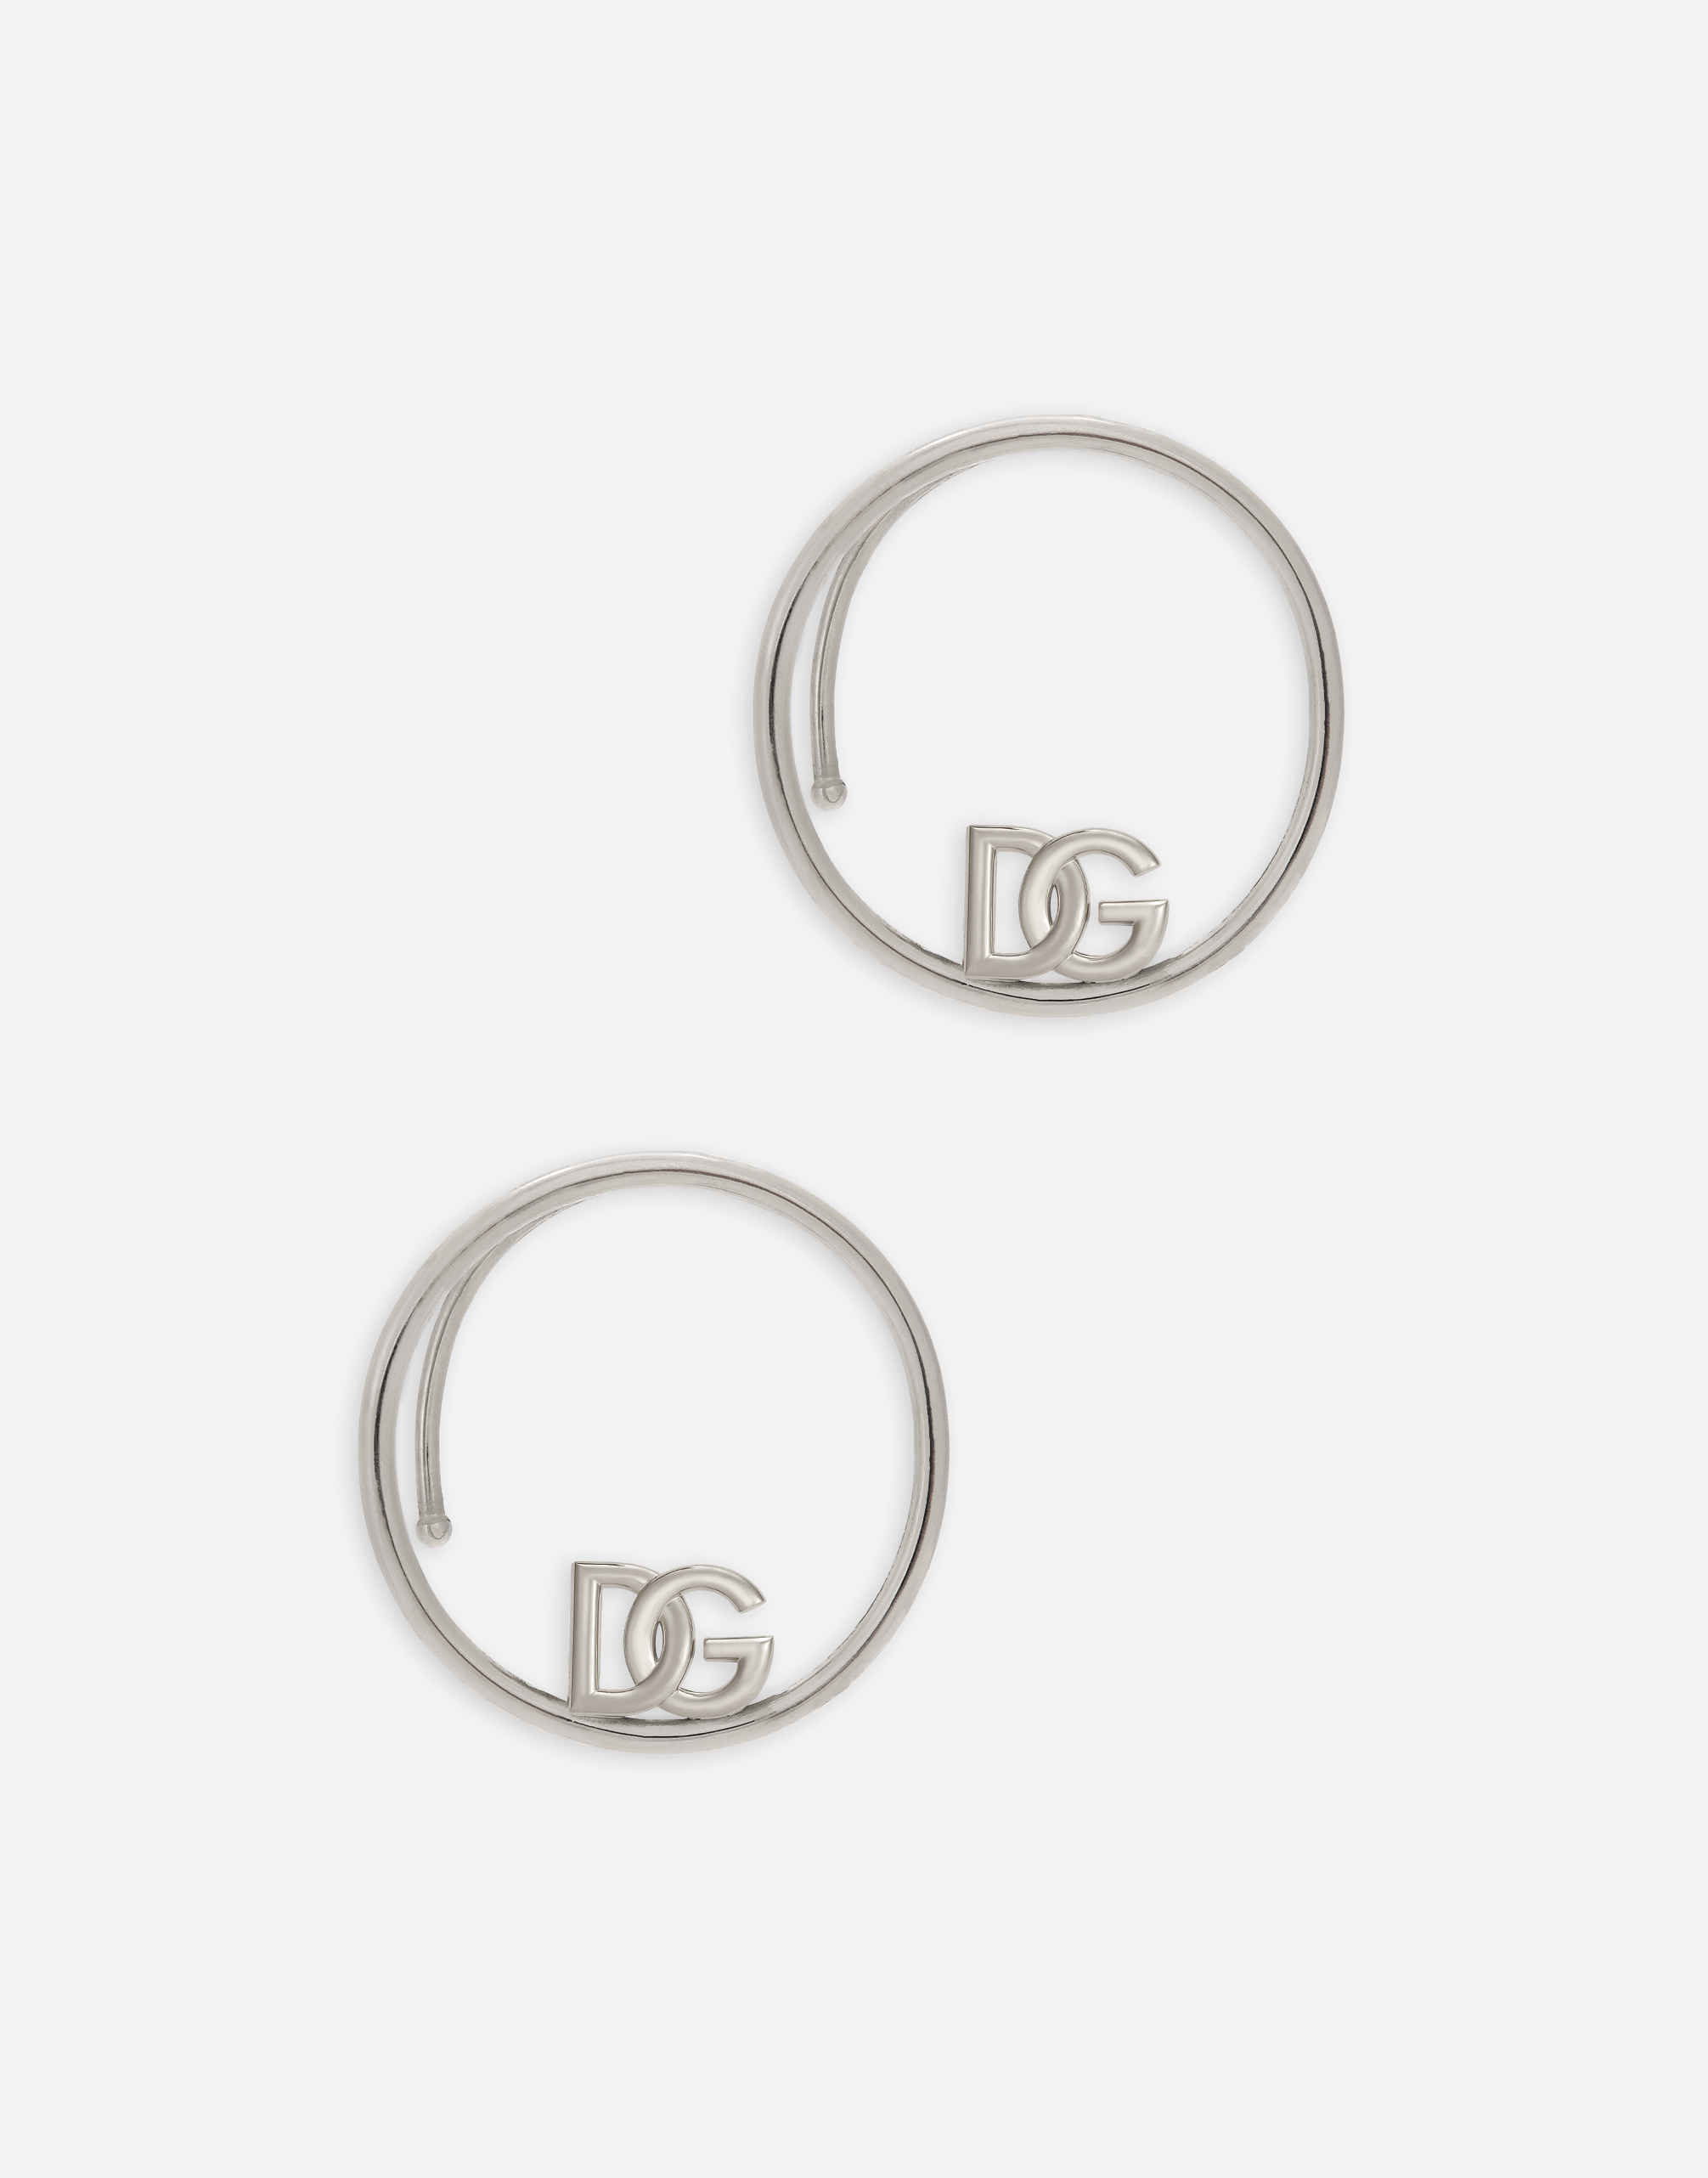 Ear cuff earrings with DG logo in Silver